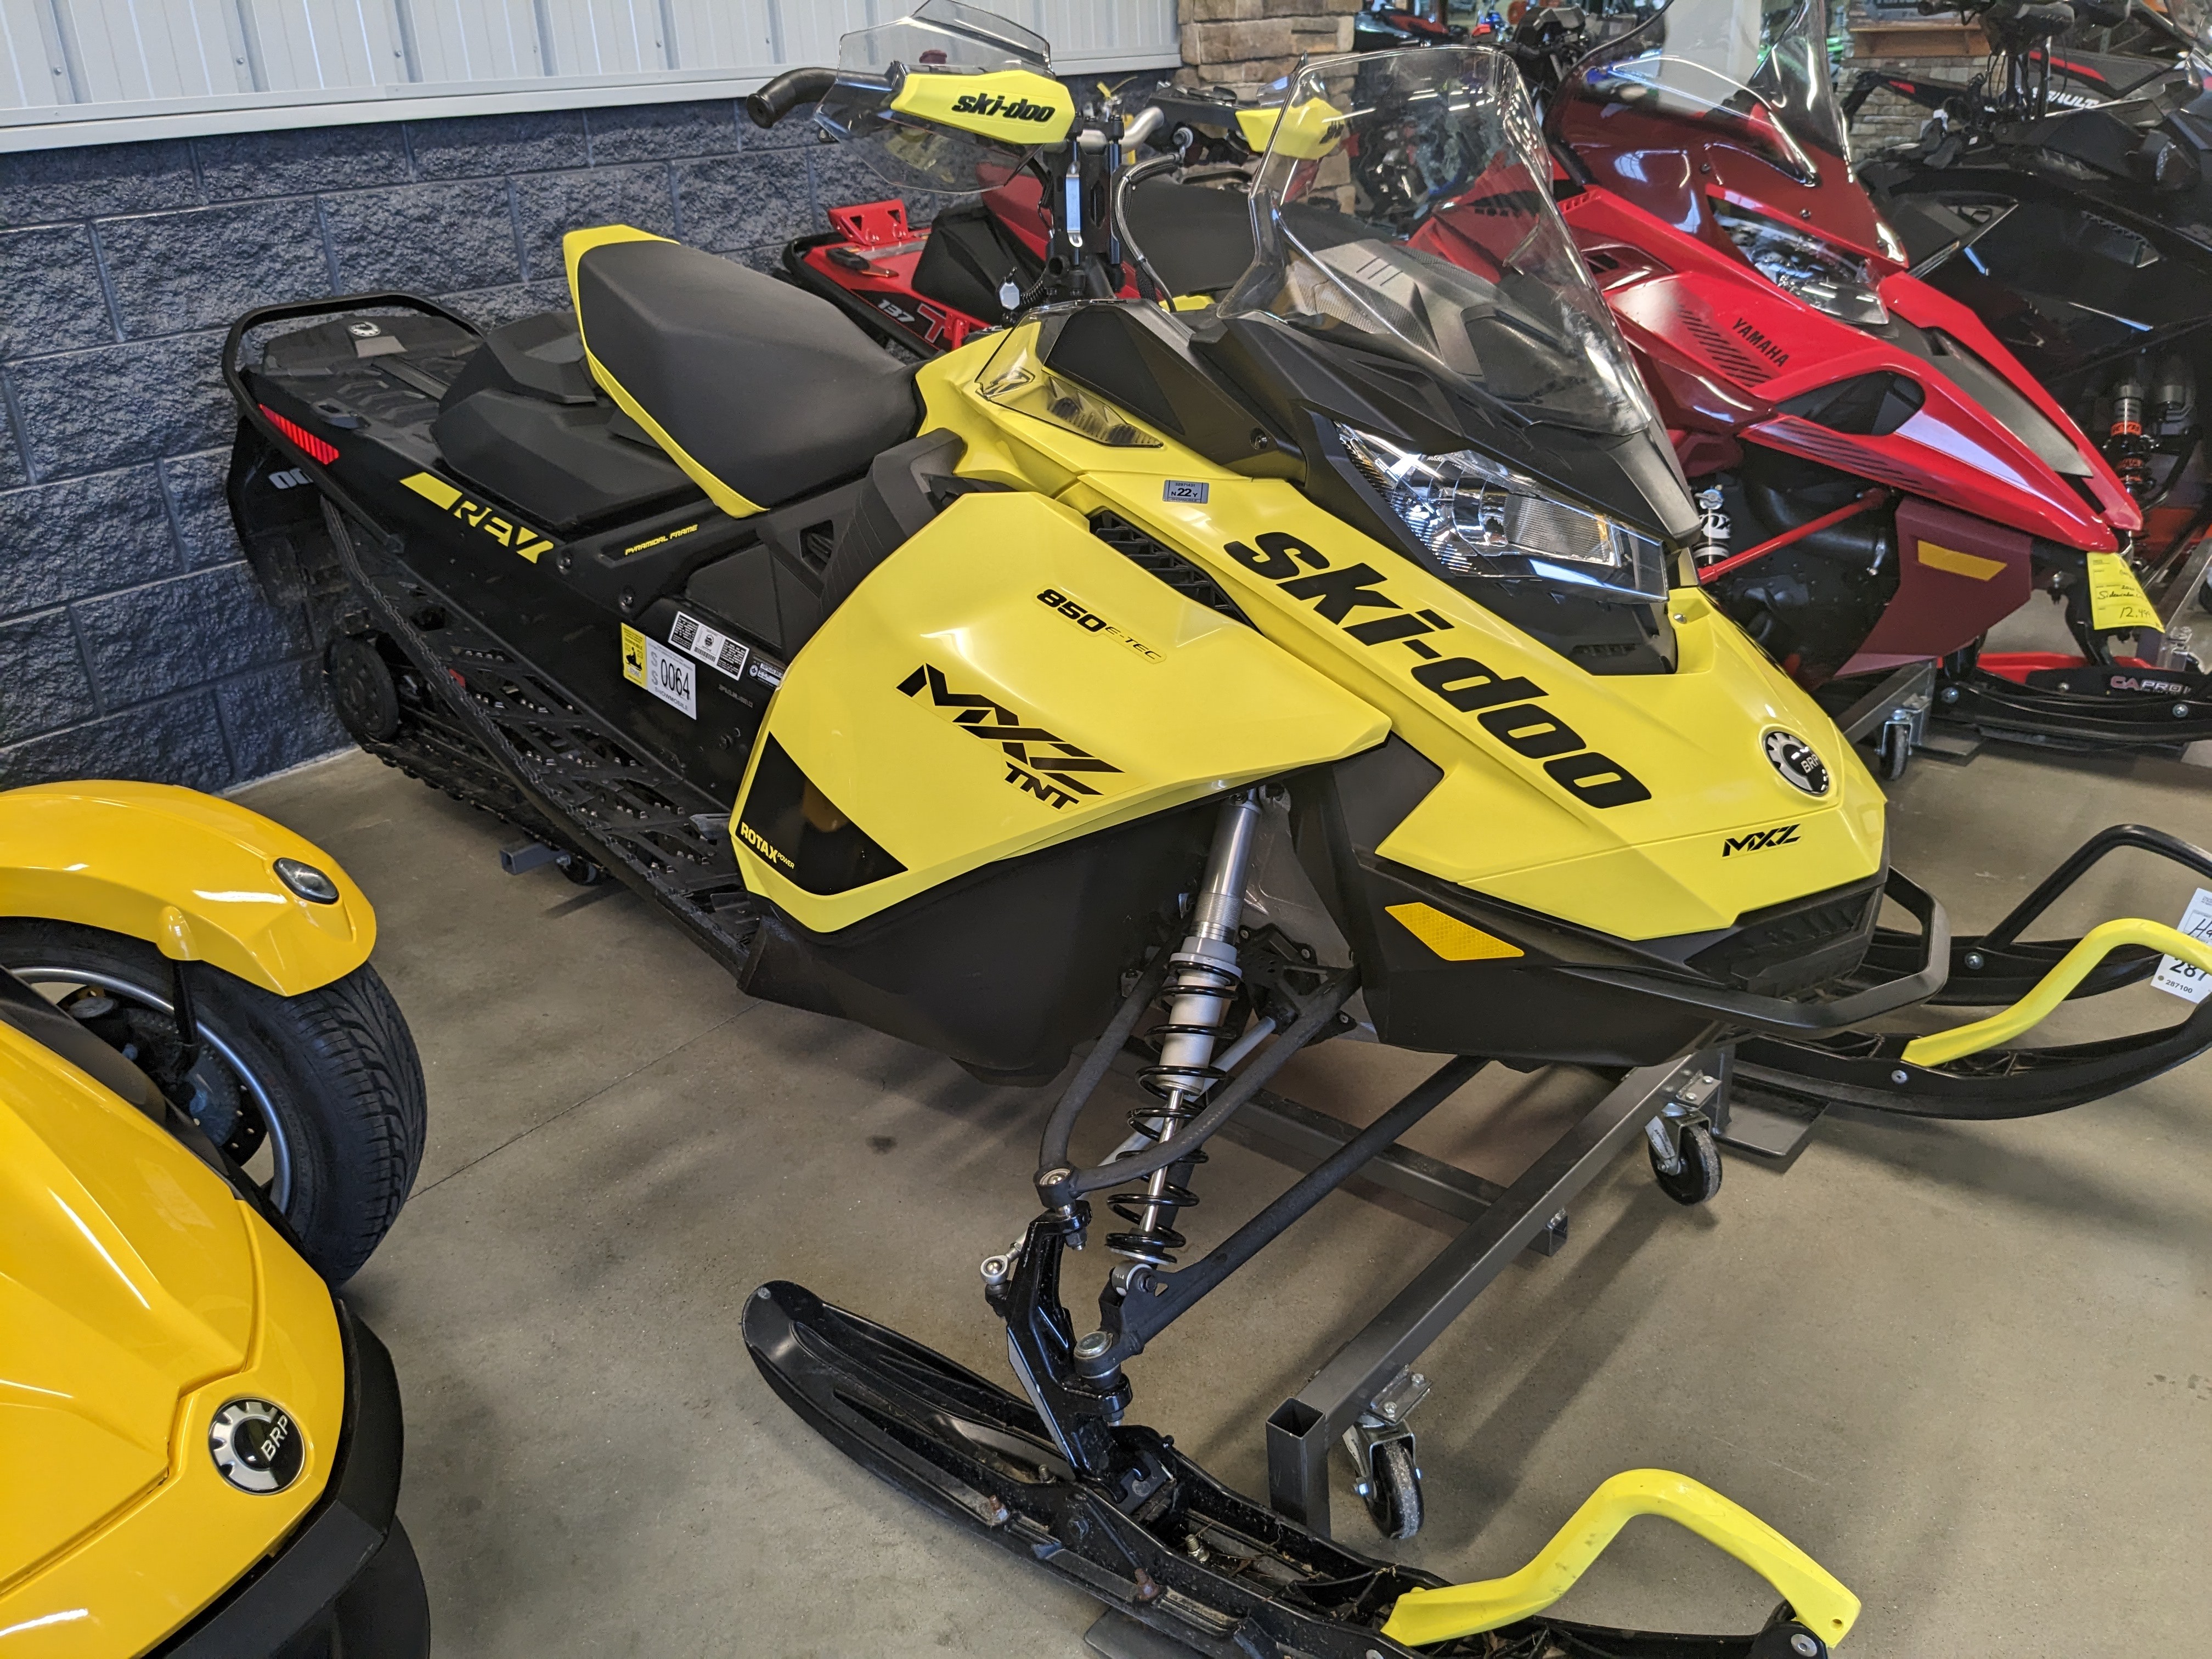 2020 Ski-Doo MXZTNT 850 E-TEC at Pioneer Motorsport